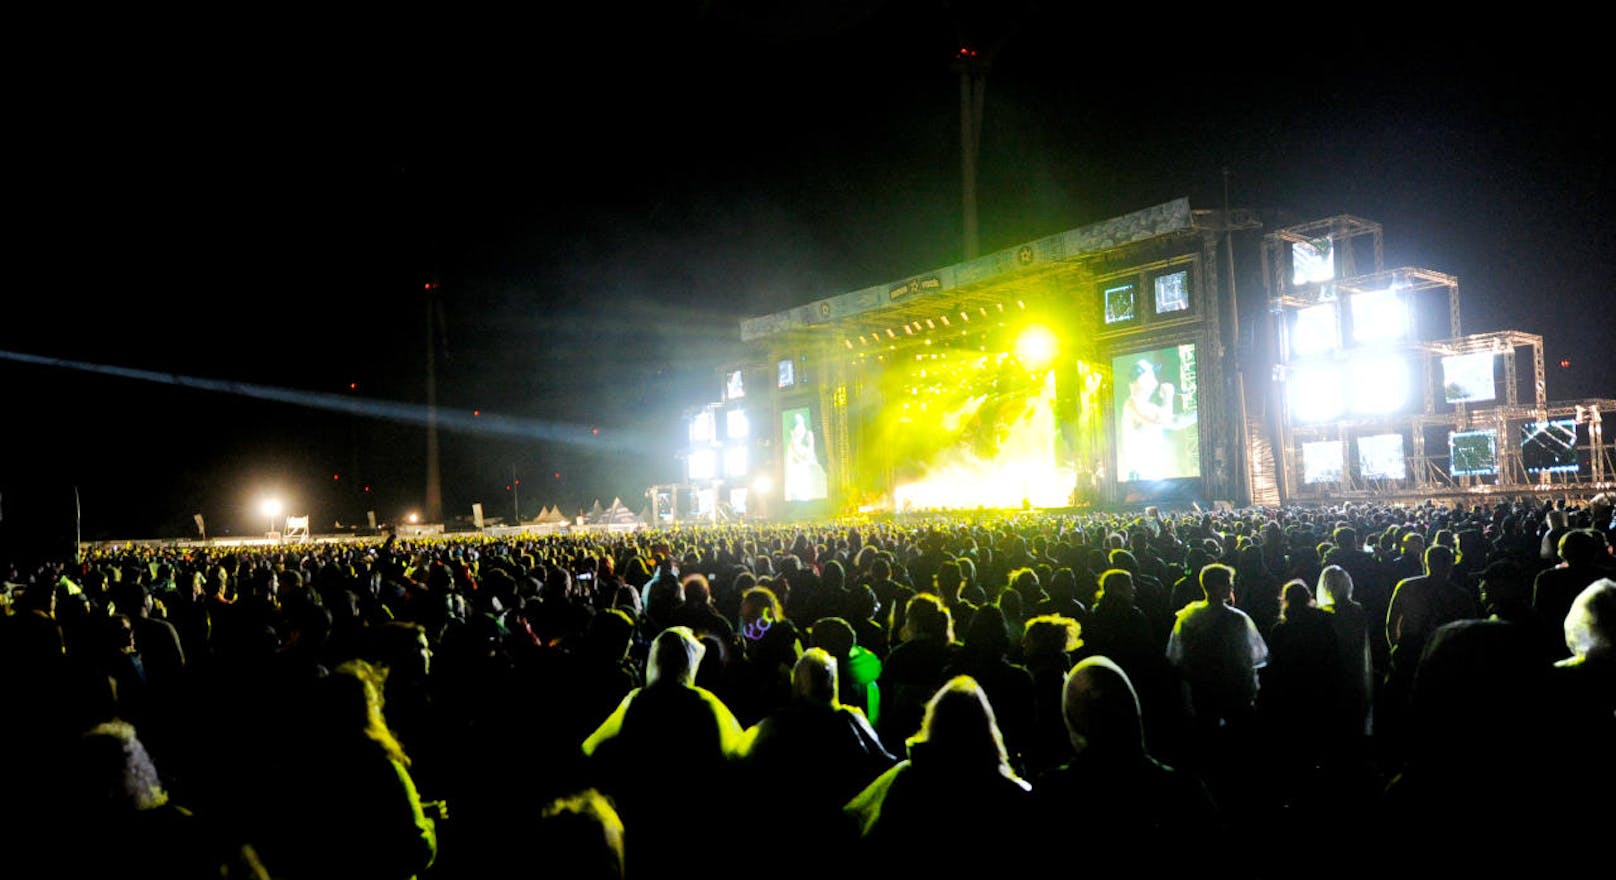 Besucher des Festivals während eines Konzertes der Band "Seiler und Speer" auf der "Blue Stage" im Rahmen des "Nova Rock 2018" Festivals am Donnerstag, 14. Juni 2018 im burgenländischen Nickelsdorf.